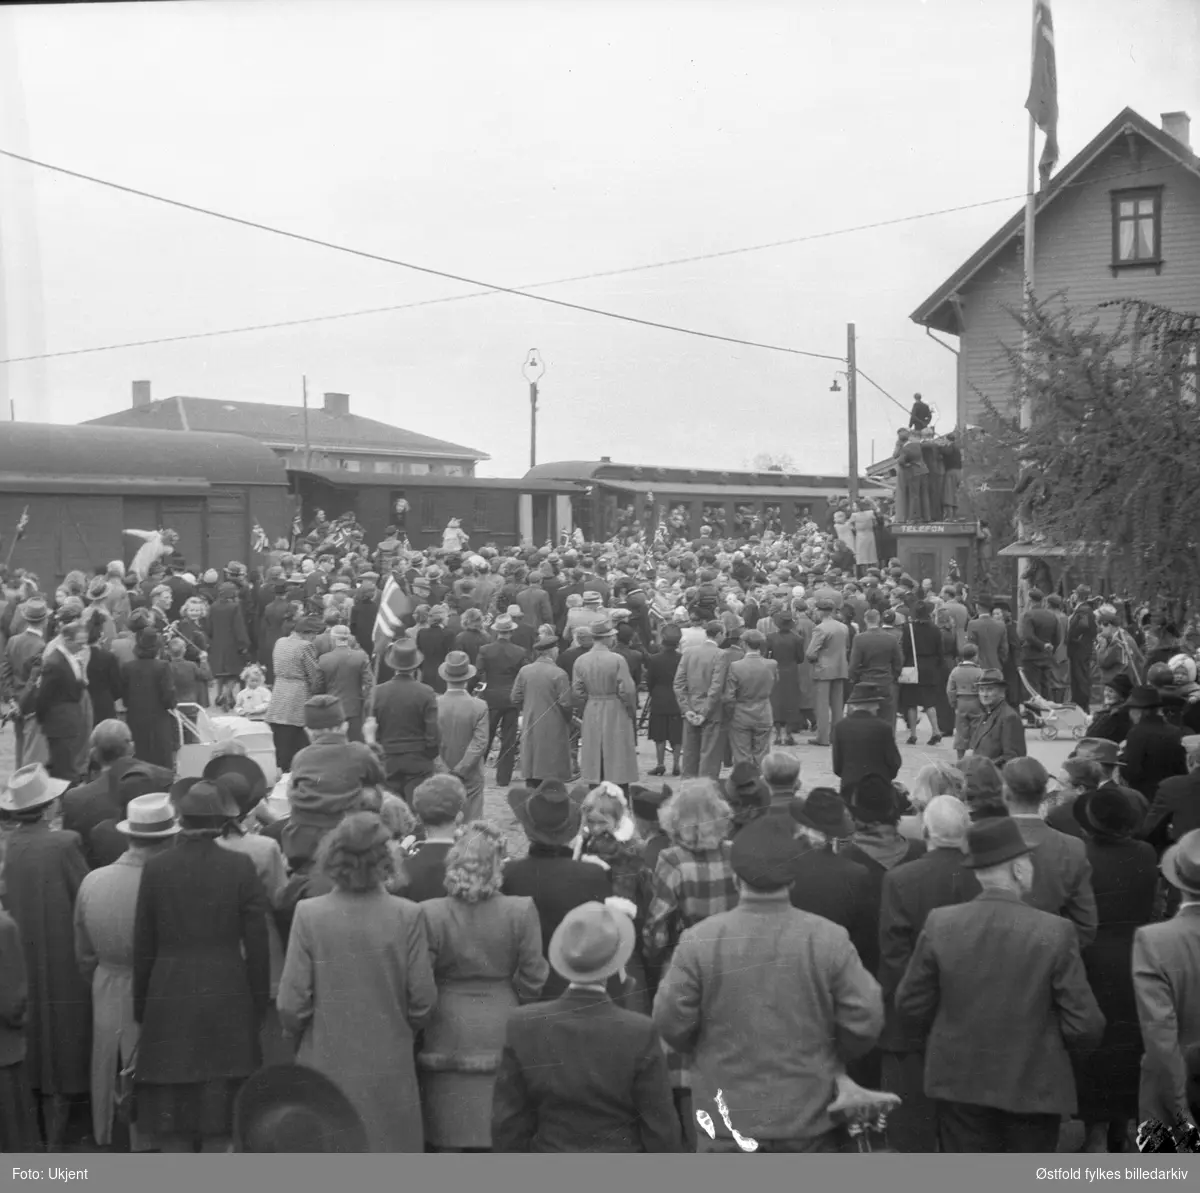 Grini-fangene kommer hjem ved frigjøringen, Askim  9. mai 1945.